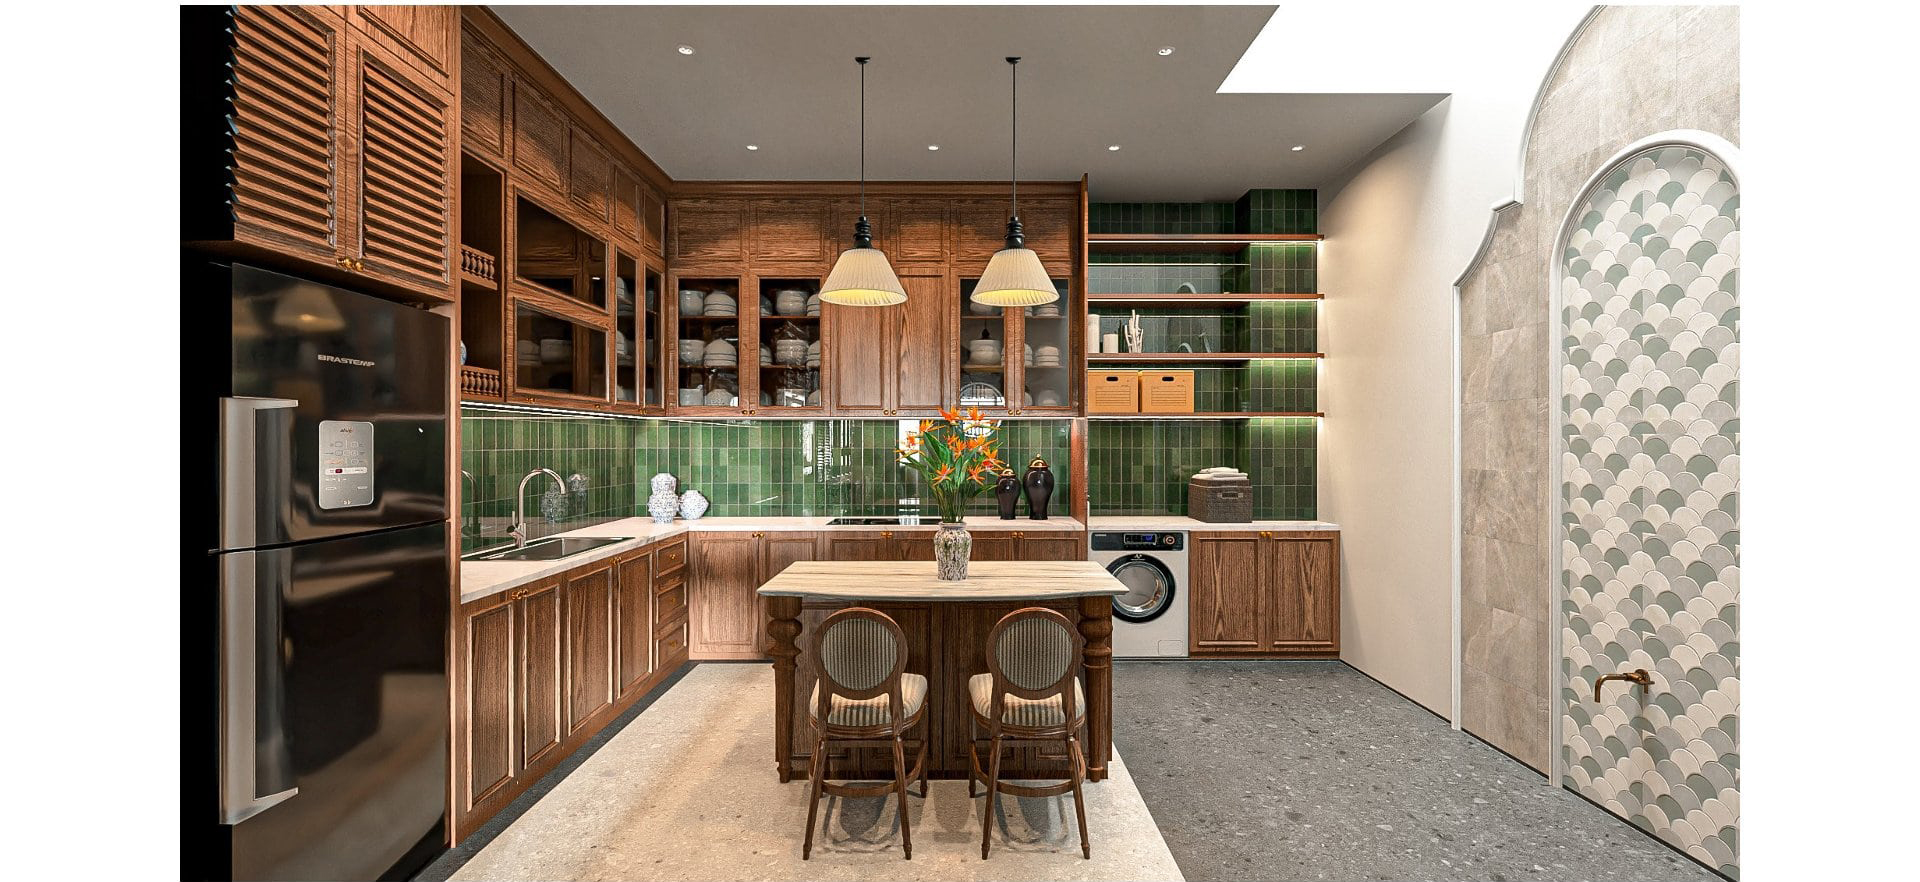 Thiết kế nội thất phòng bếp | Thiết kế nội thất nhà phố phong cách indochine